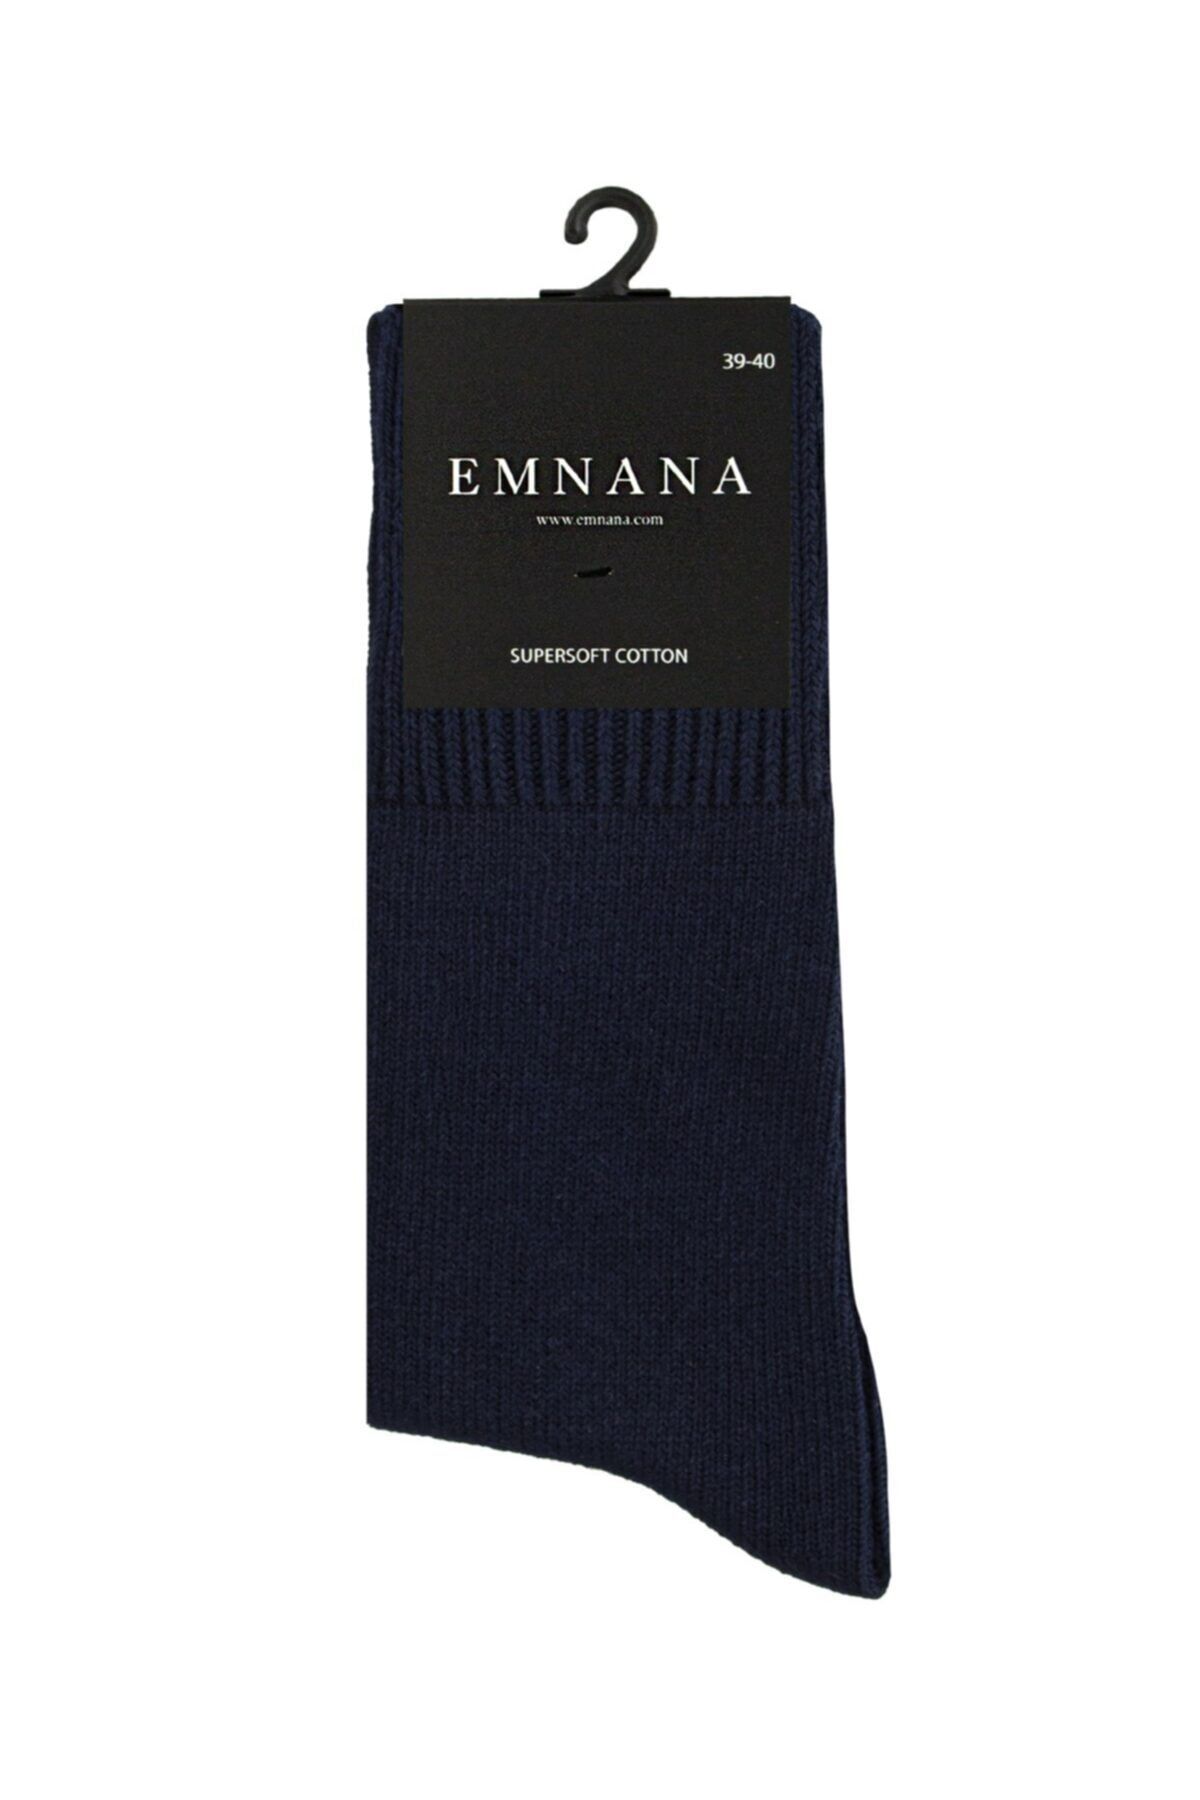 EMNANA 5 Adet Kalın Pamuklu Kışlık Erkek Çorap - Lacivert